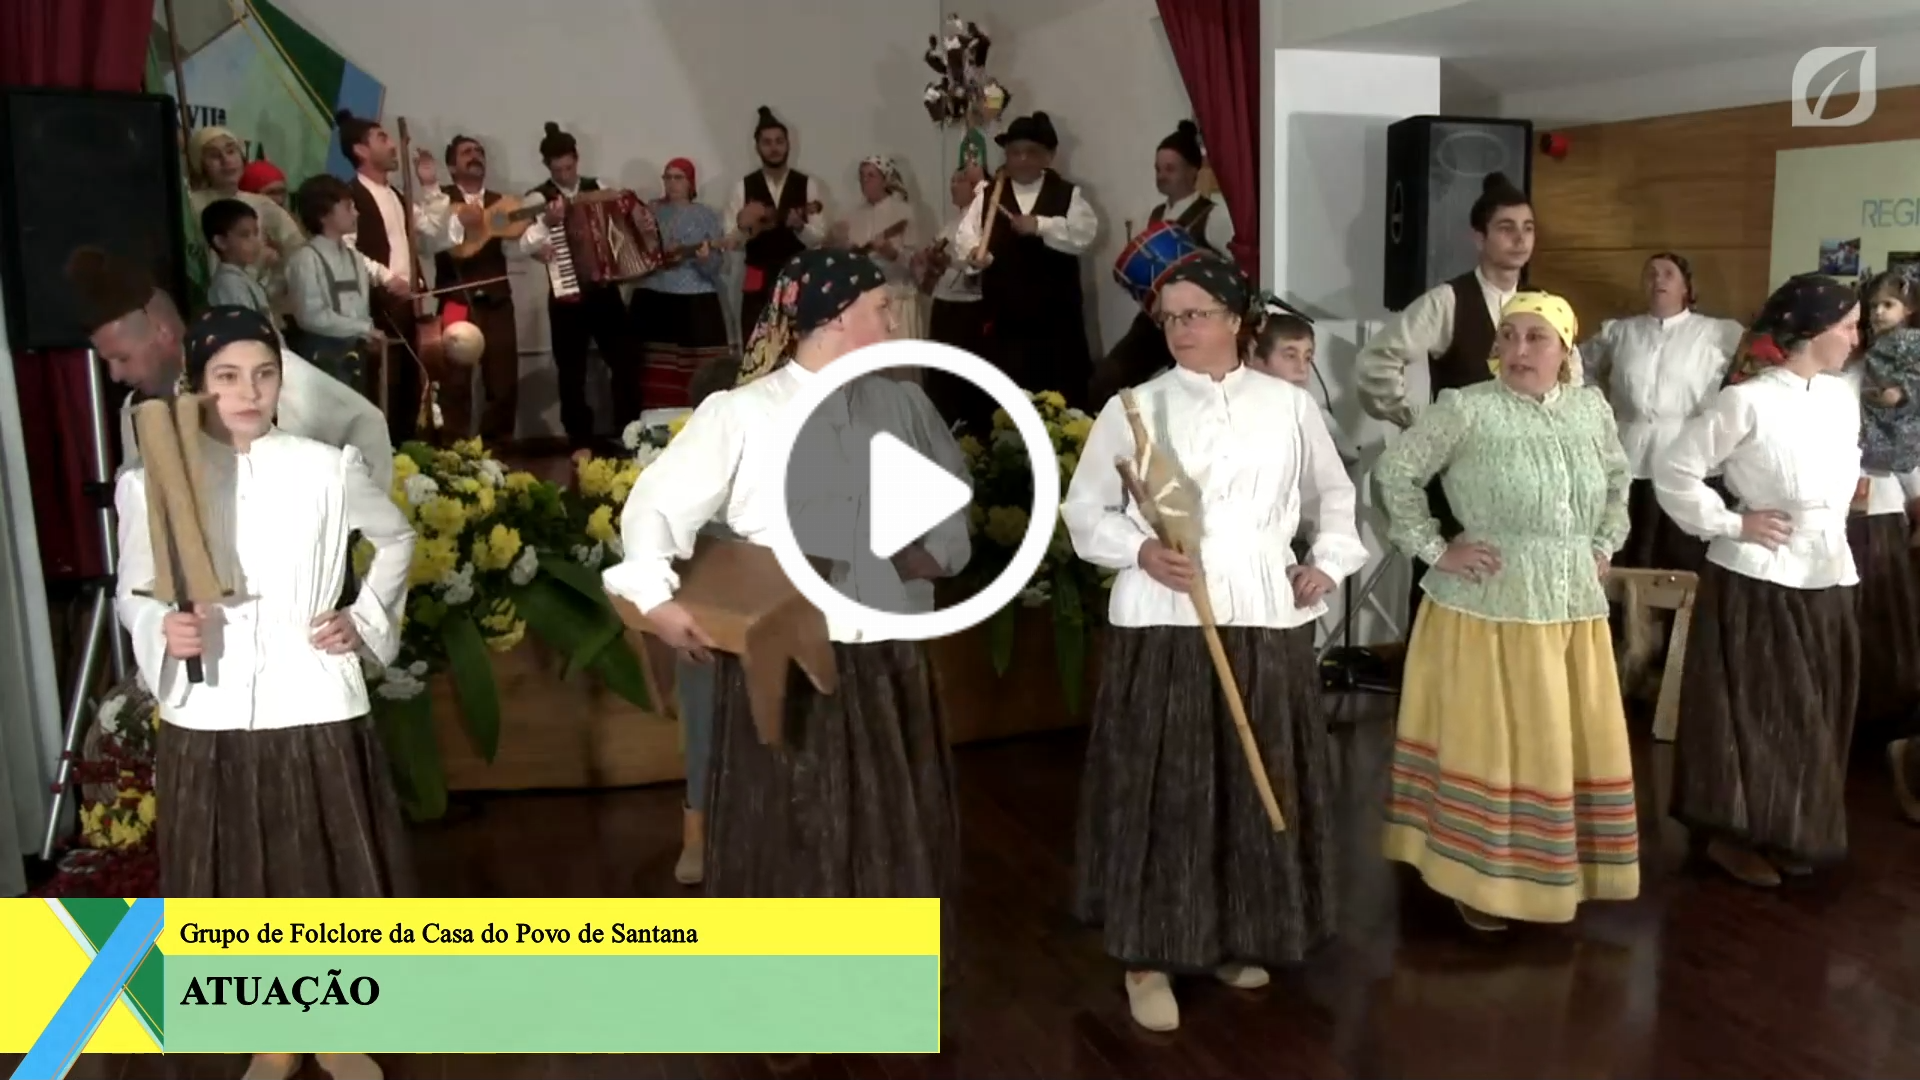 O Grupo de Folclore da Casa do Povo de Santana anima este dia de Semana Cultural